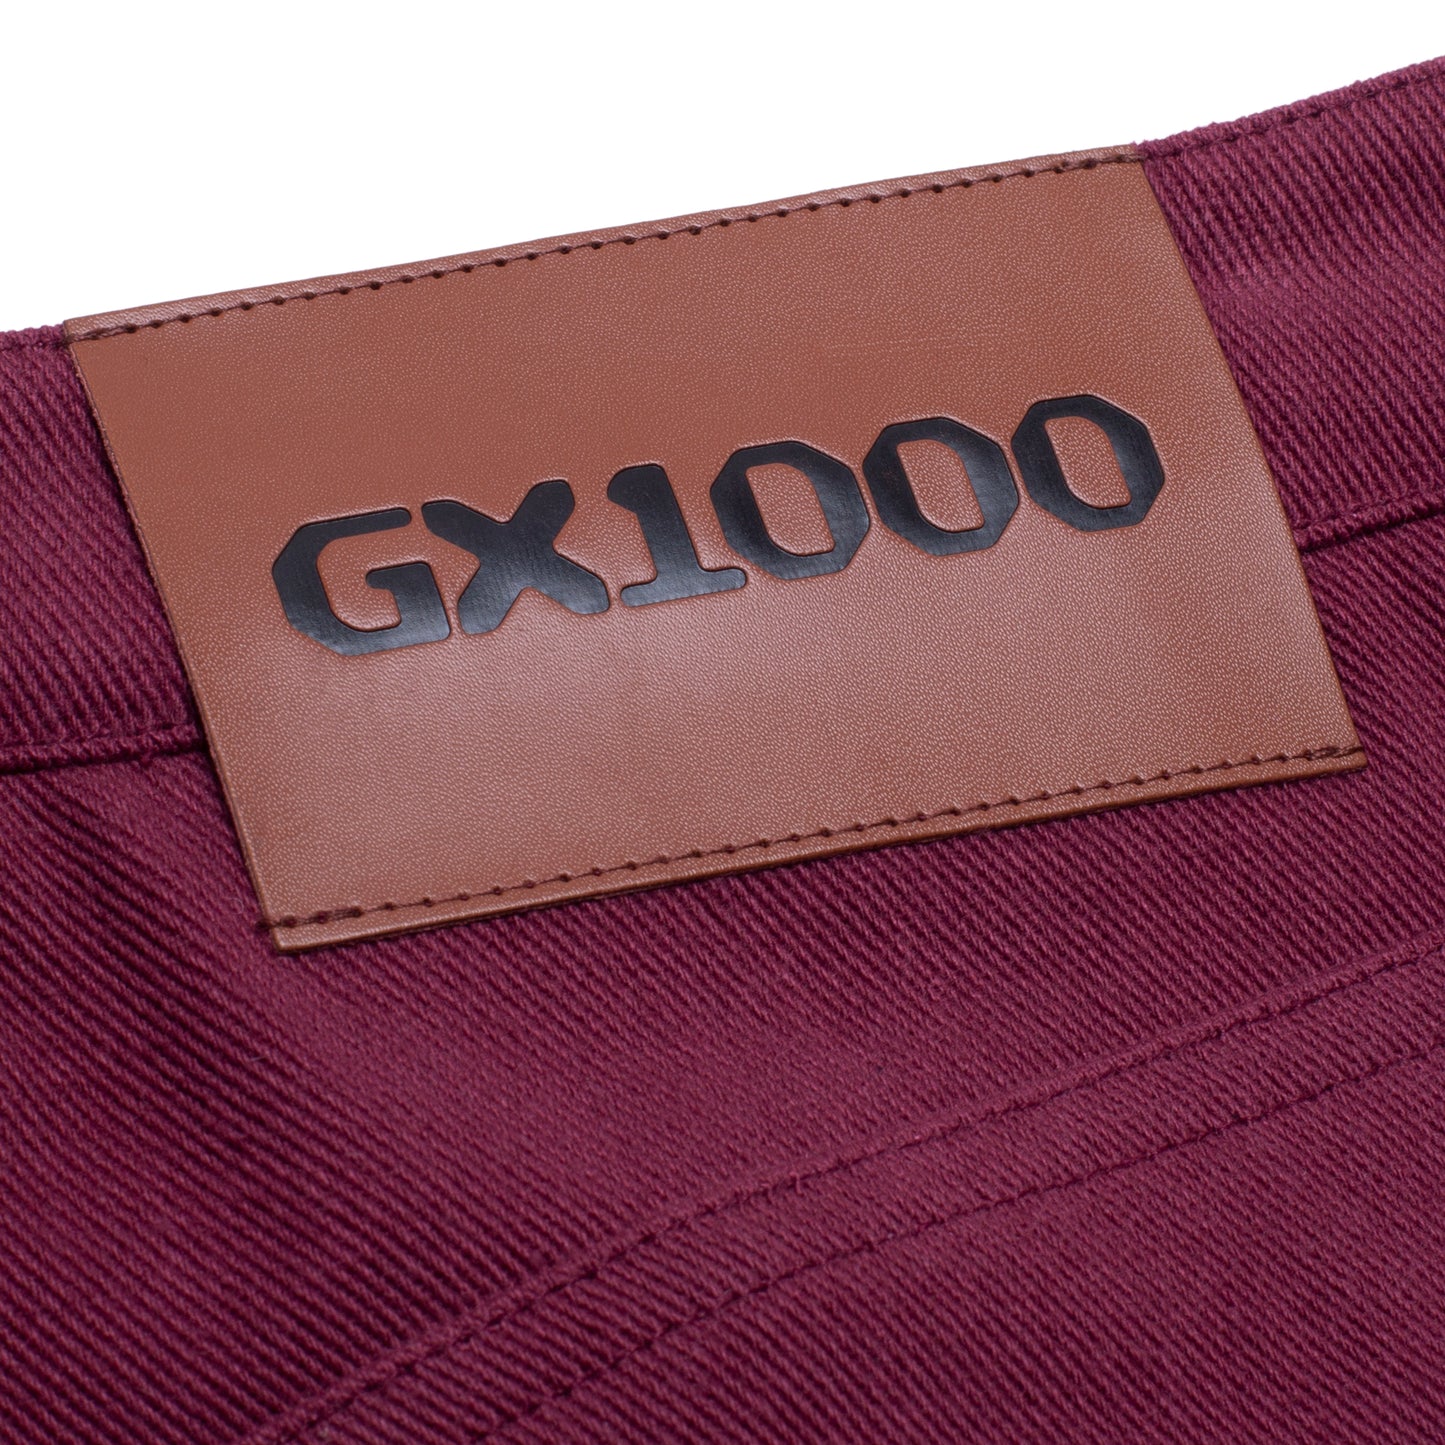 GX1000 ジメチルトリプタミン バギー パンツ - マルーン